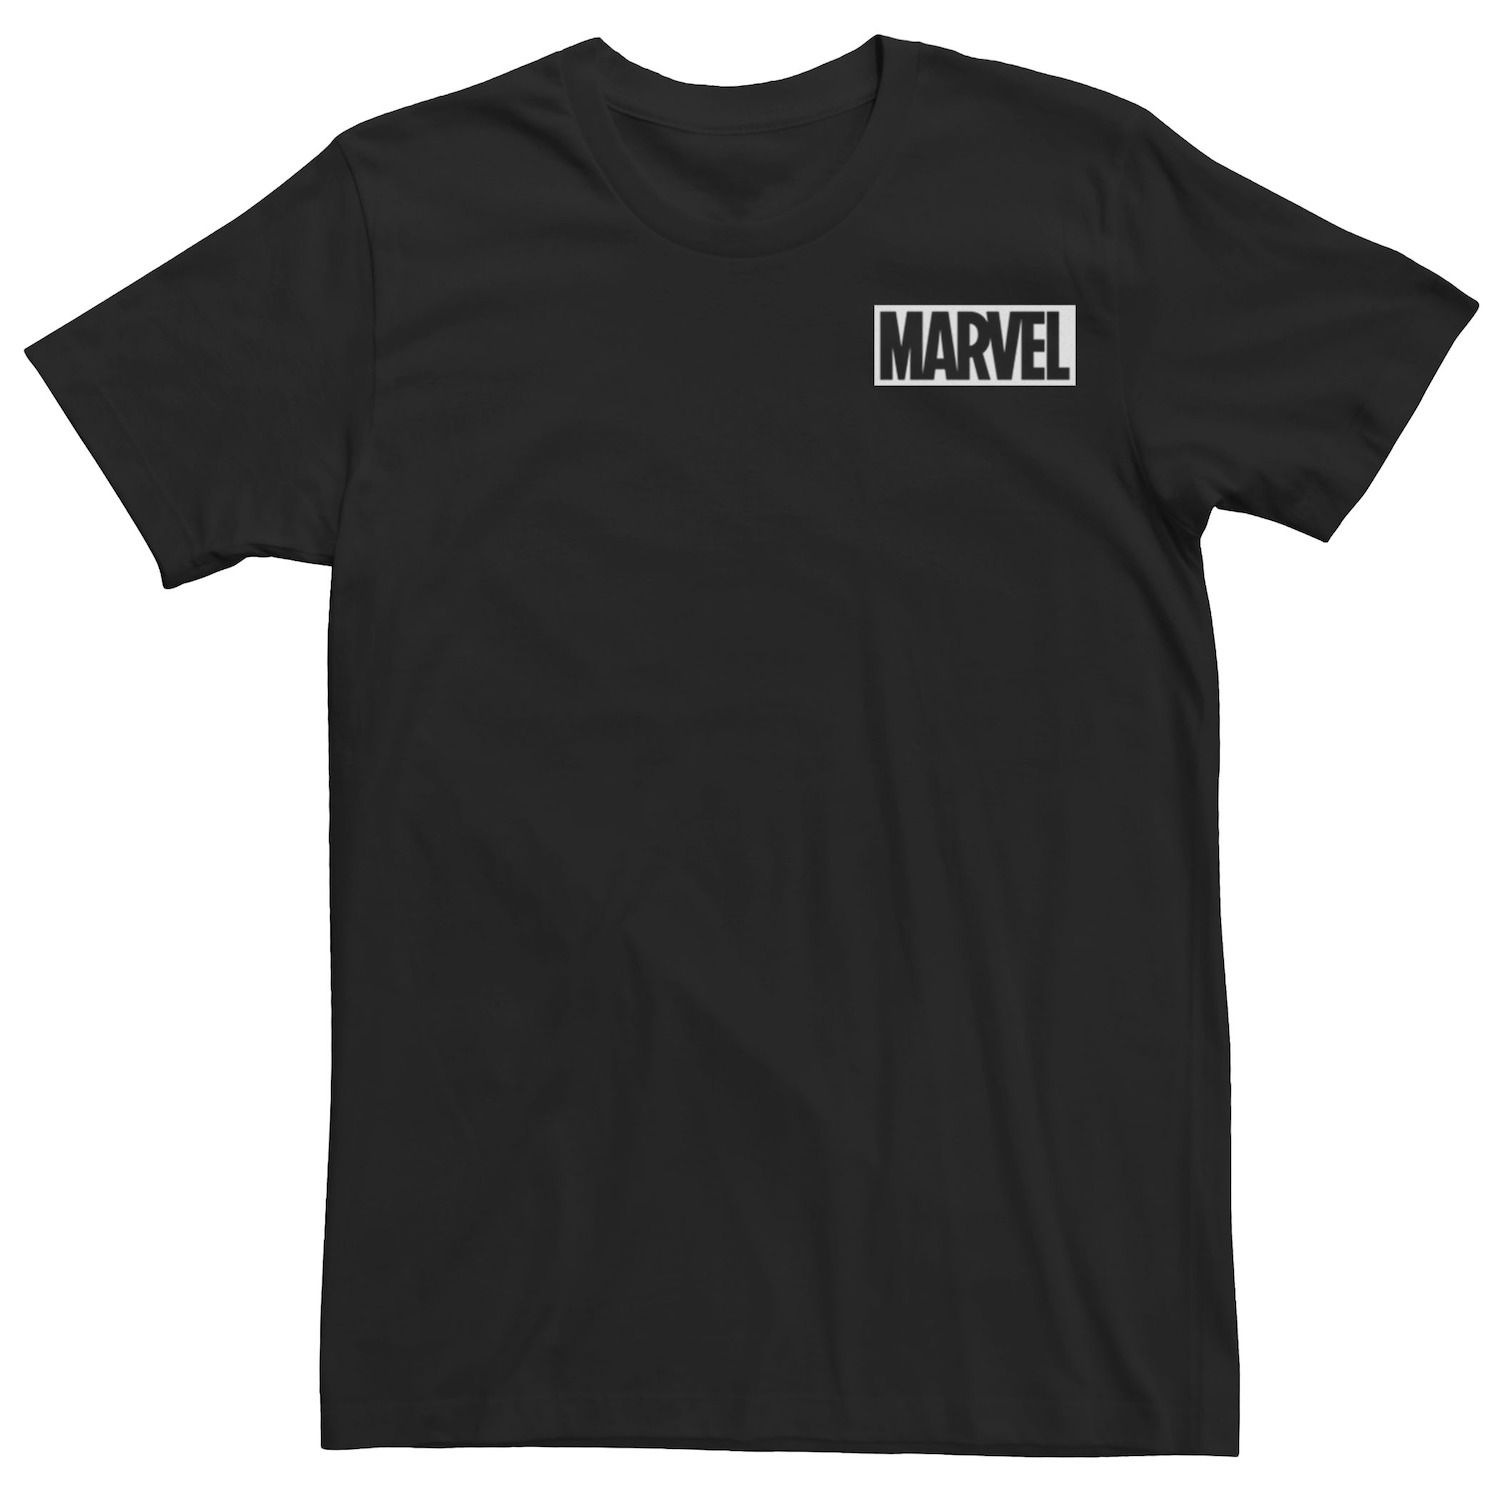 Мужская простая белая футболка с логотипом комиксов Marvel, черный